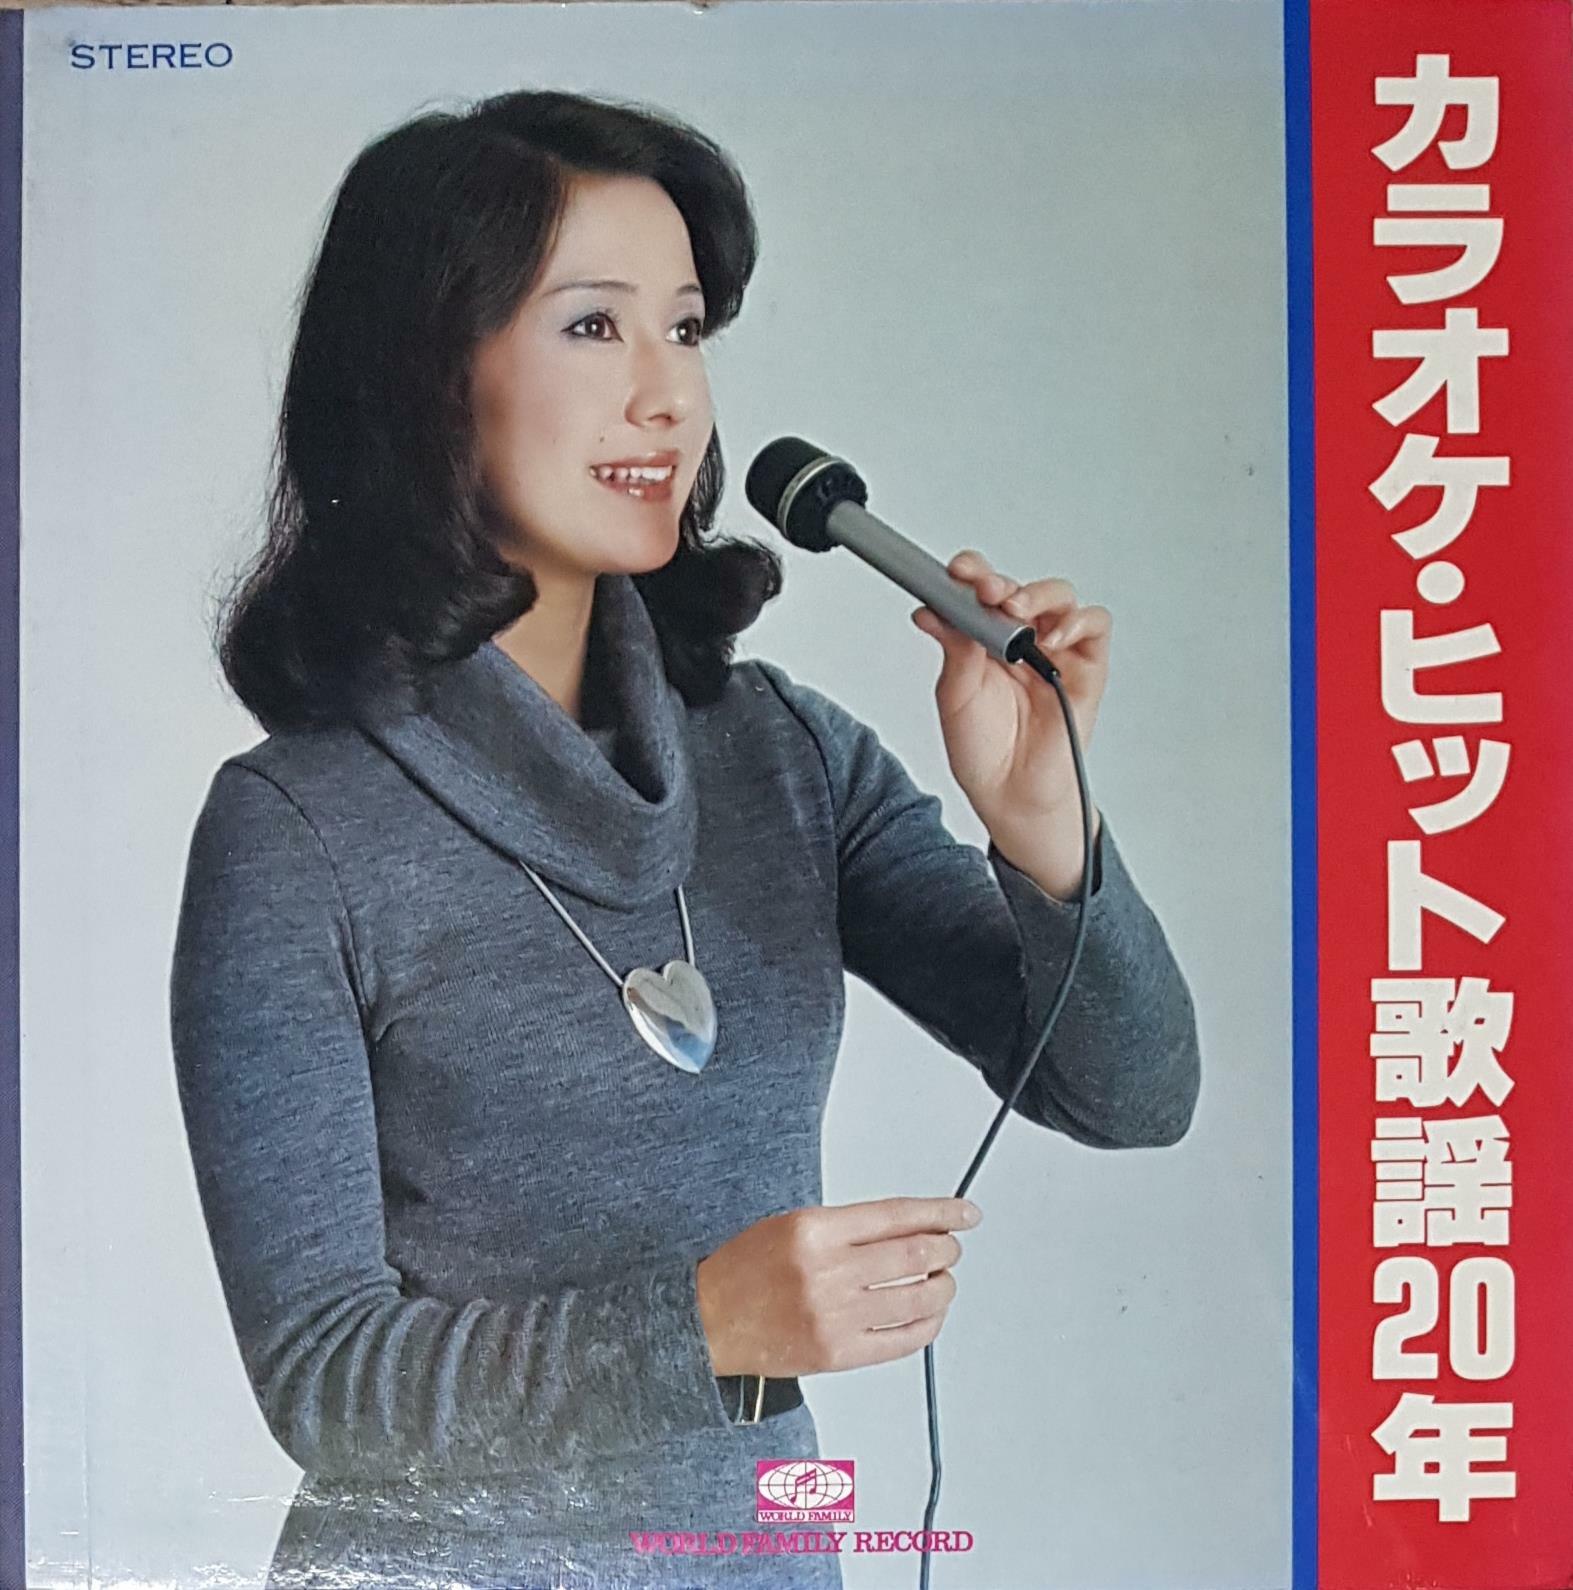 [중고] [일본반][LP] V.A - Karaoke Hits Songs 20 Years [Boxset] [8LP]